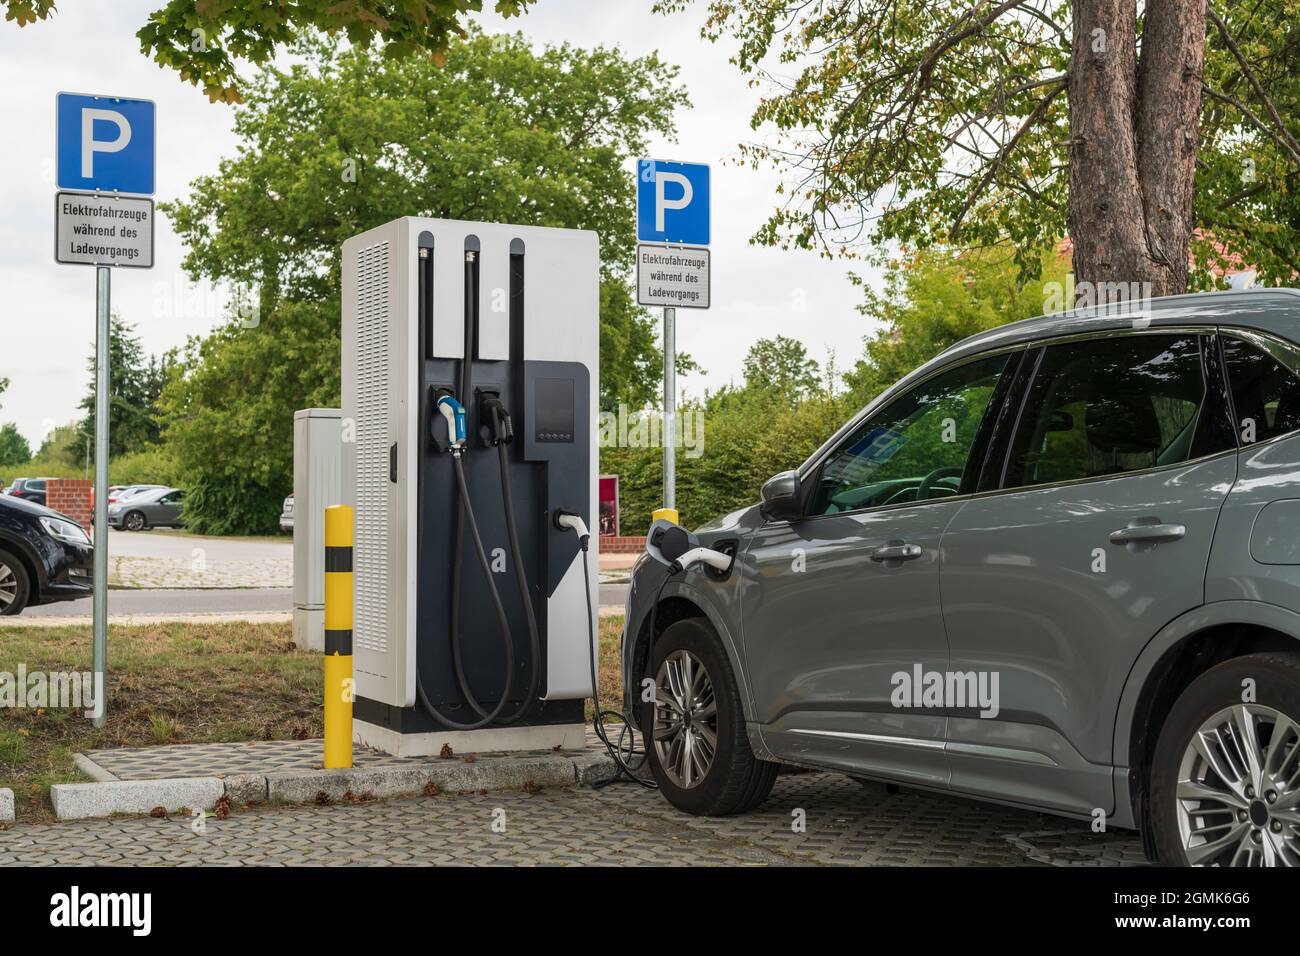 Un coche en una estación de carga y en la señal de estacionamiento es la señal adicional con el texto alemán 'Vehículos eléctricos durante la carga' Foto de stock